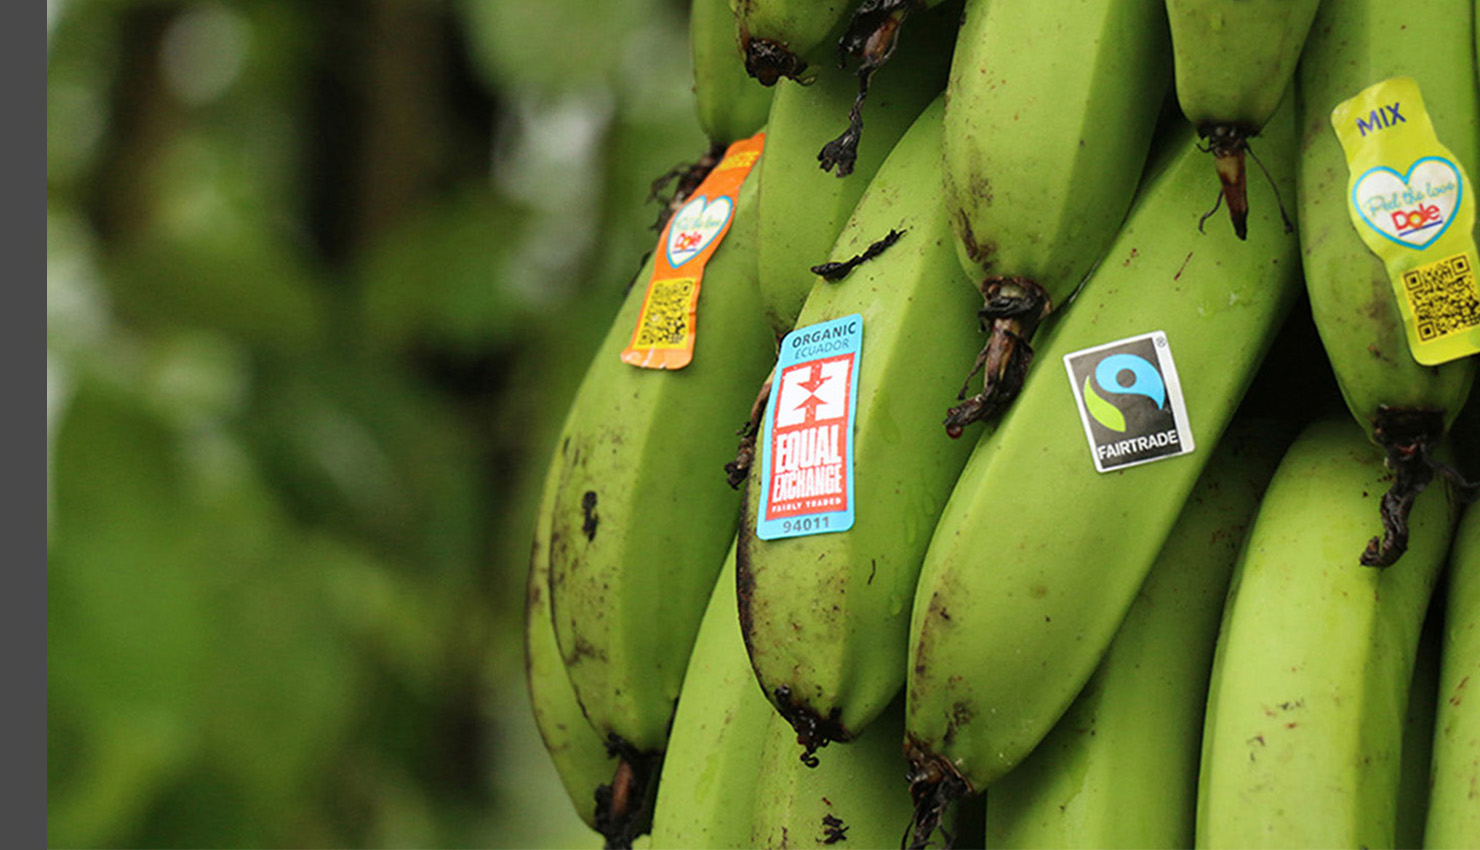 Order Equal Exchange Fair Trade Organic Bananas